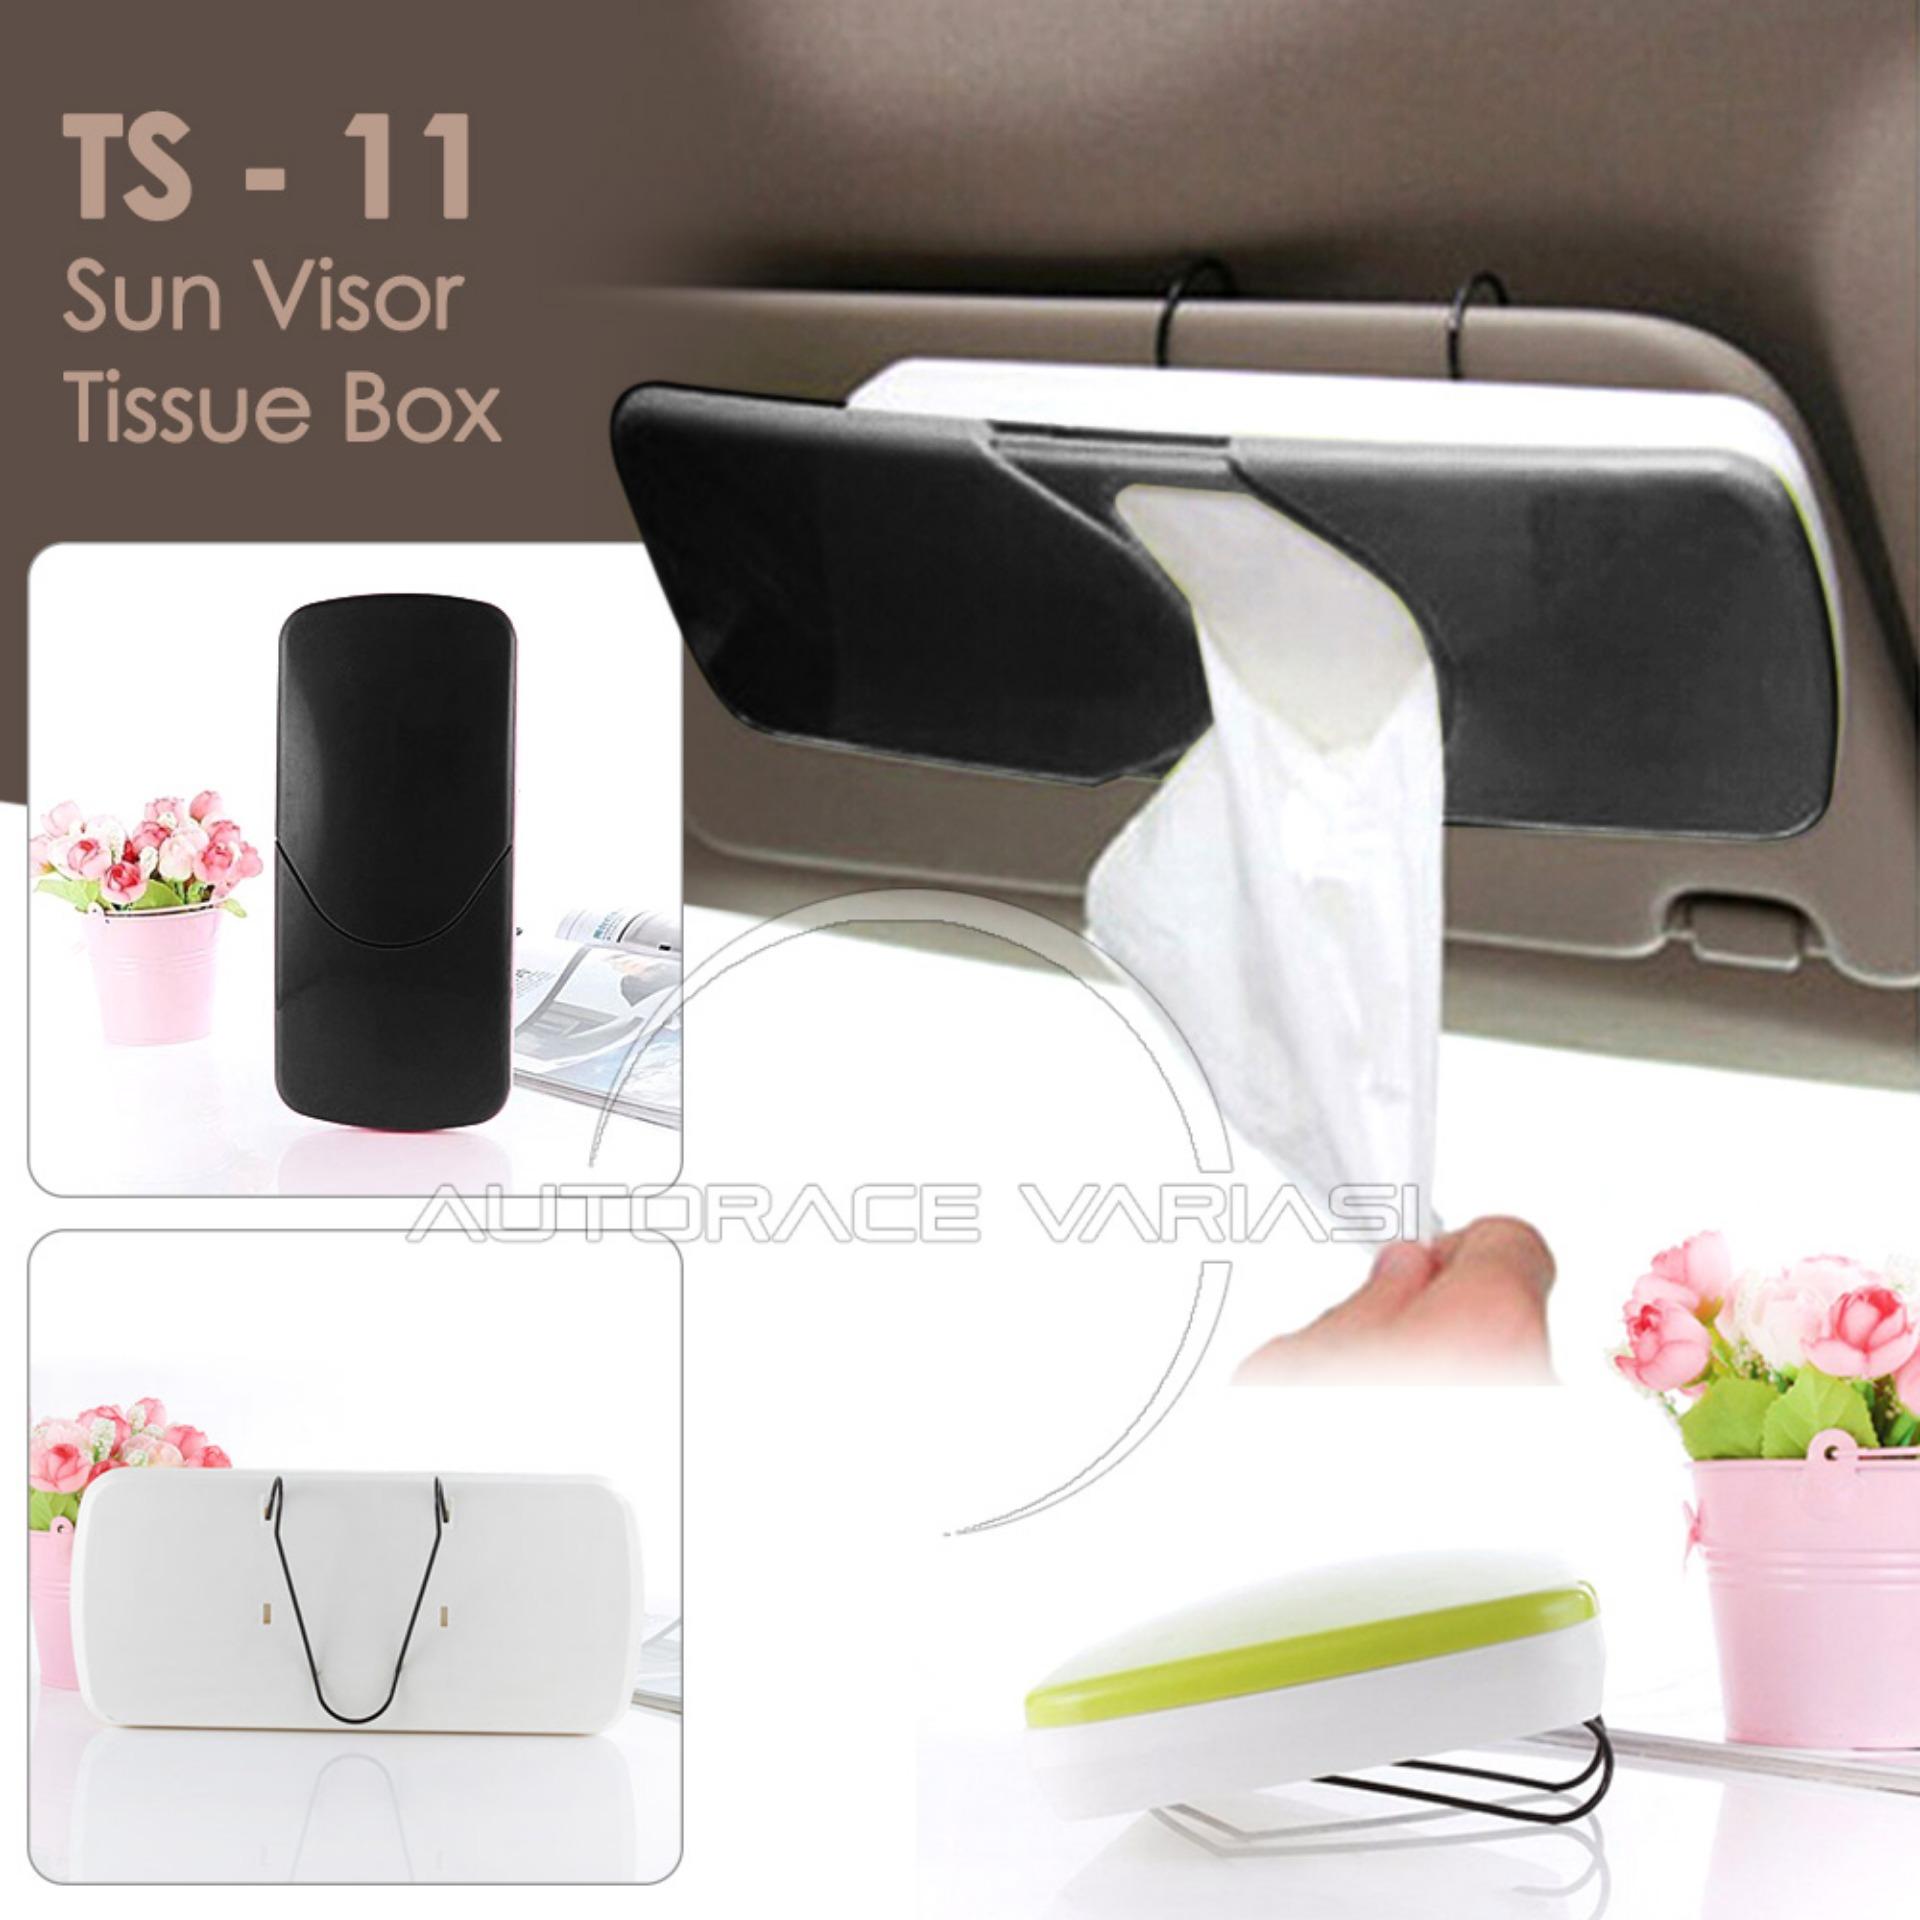 Autorace Tempat Tissu Mobil / Tissue Box Gantung Sunvisor TS-11 - Black